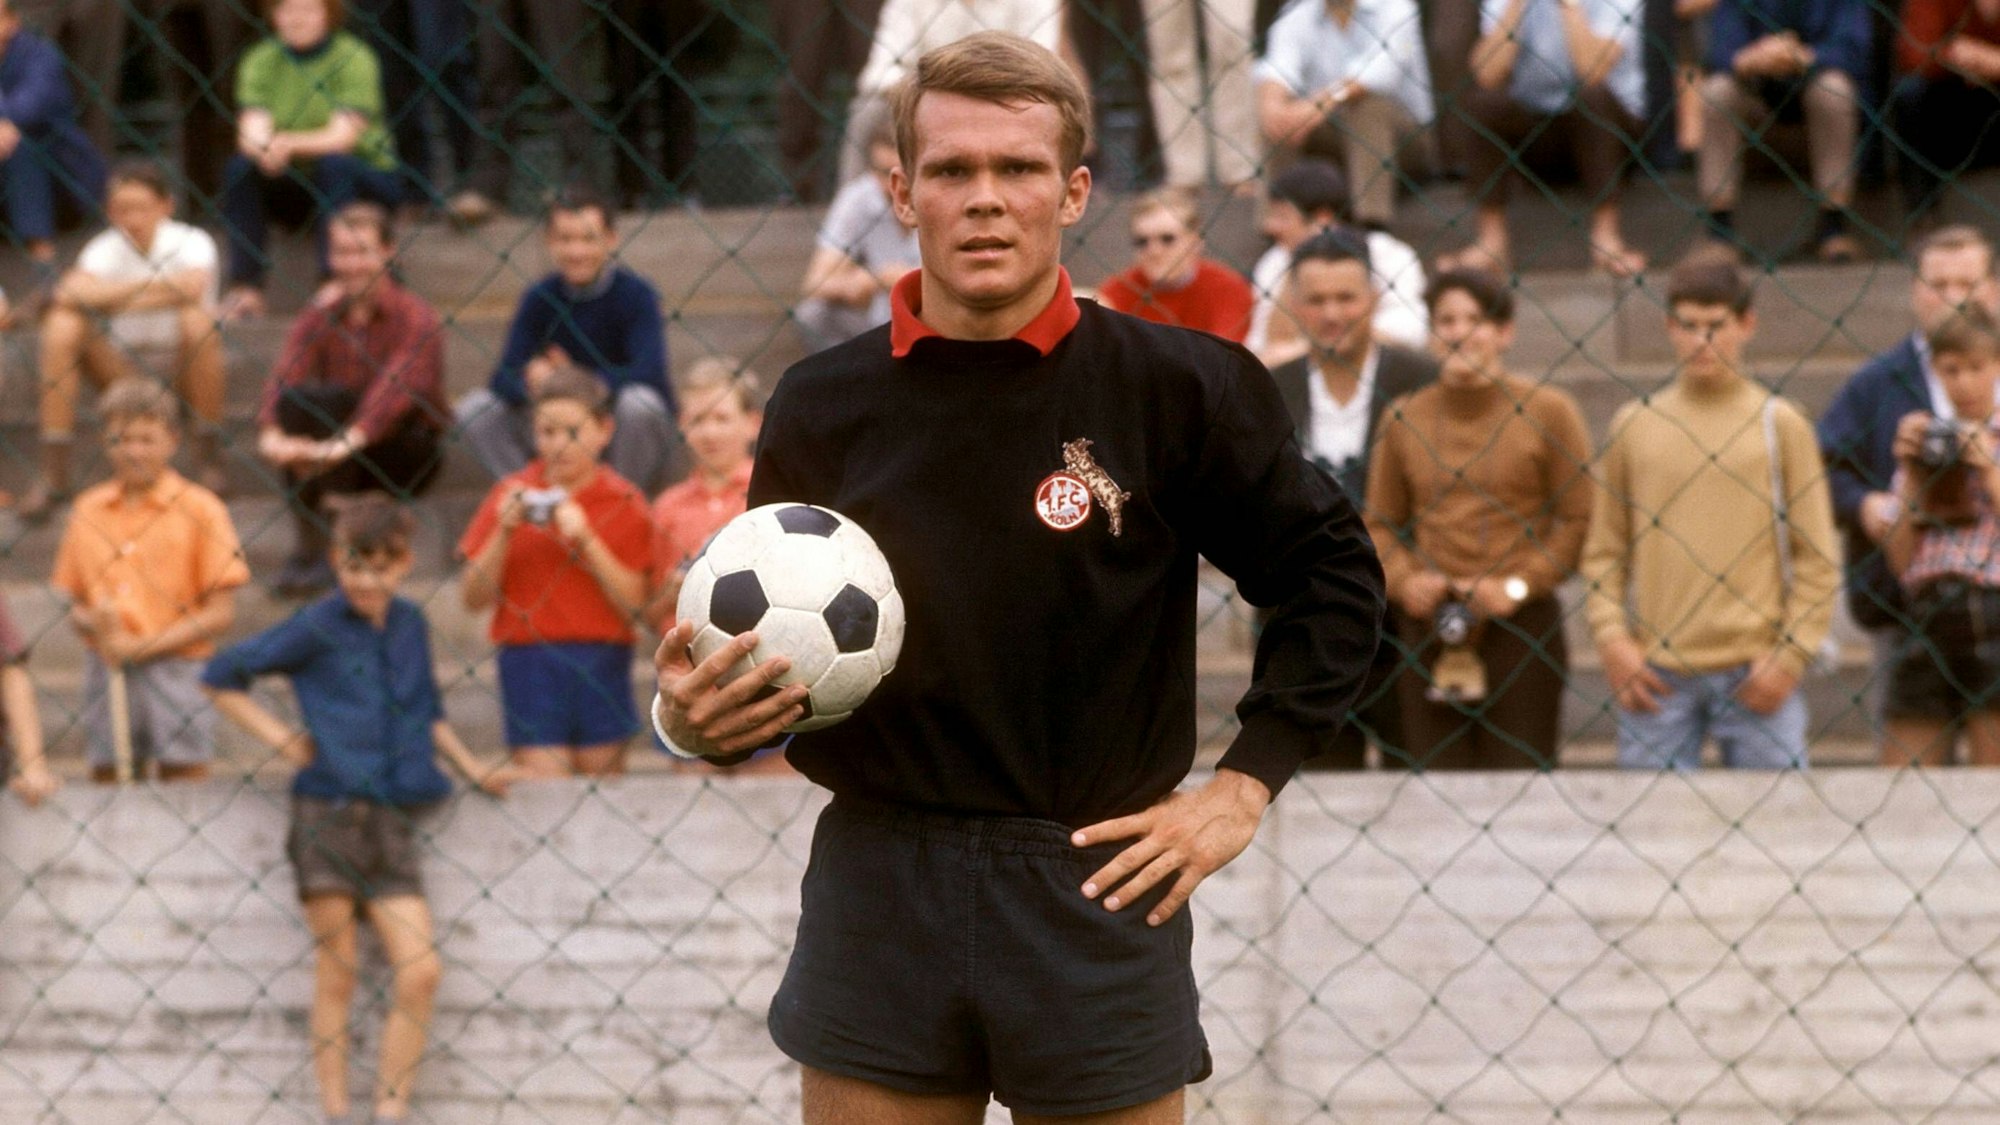 Rolf Birkhölzer als Fußballtorhüter in der Saison 1968/69 - im Stadion mit Ball in der Hand.